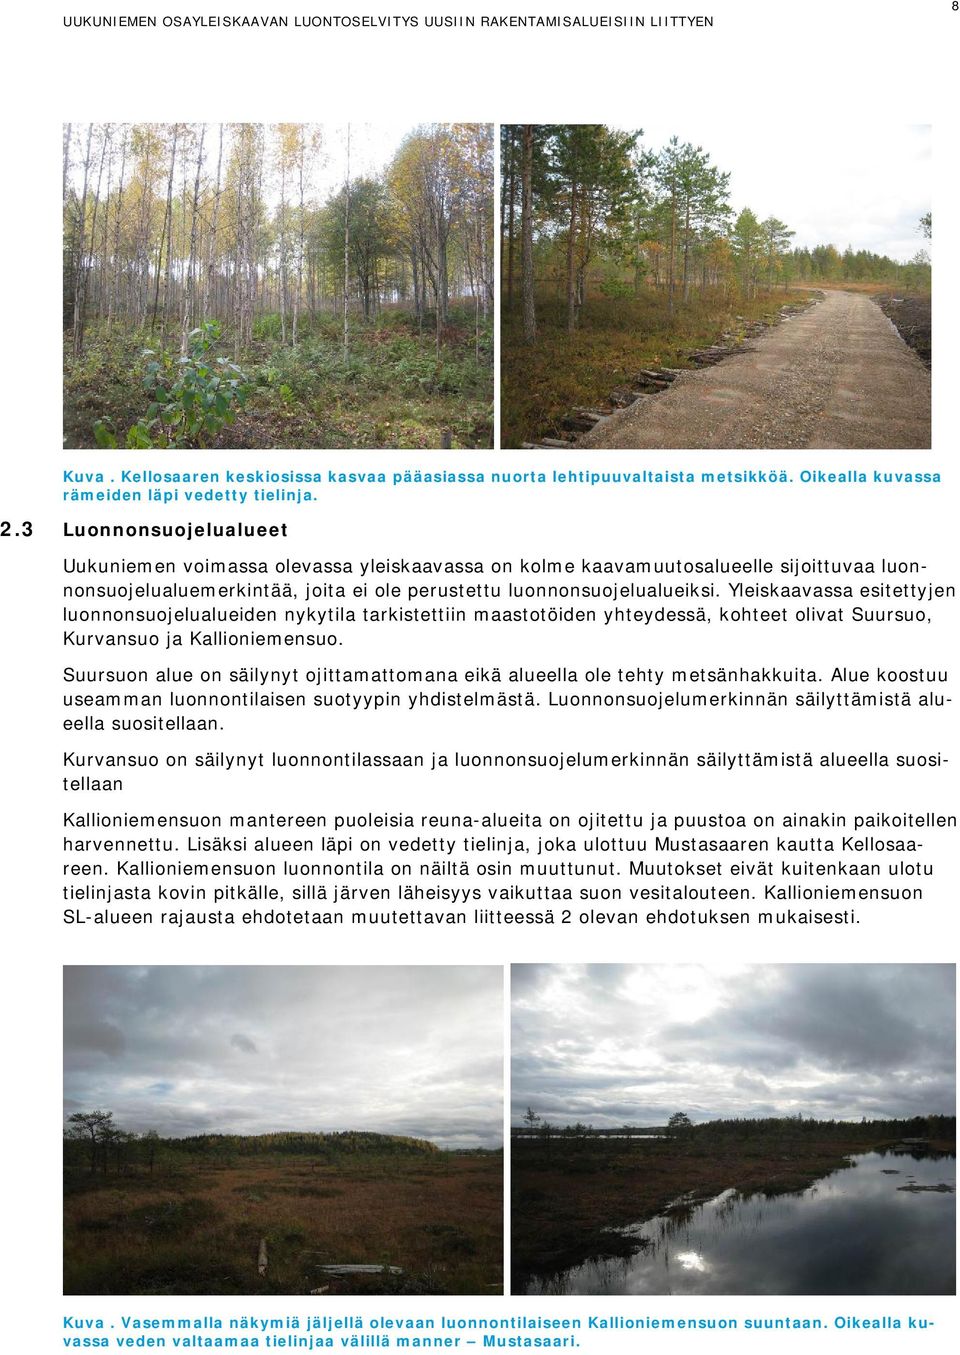 Yleiskaavassa esitettyjen luonnonsuojelualueiden nykytila tarkistettiin maastotöiden yhteydessä, kohteet olivat Suursuo, Kurvansuo ja Kallioniemensuo.